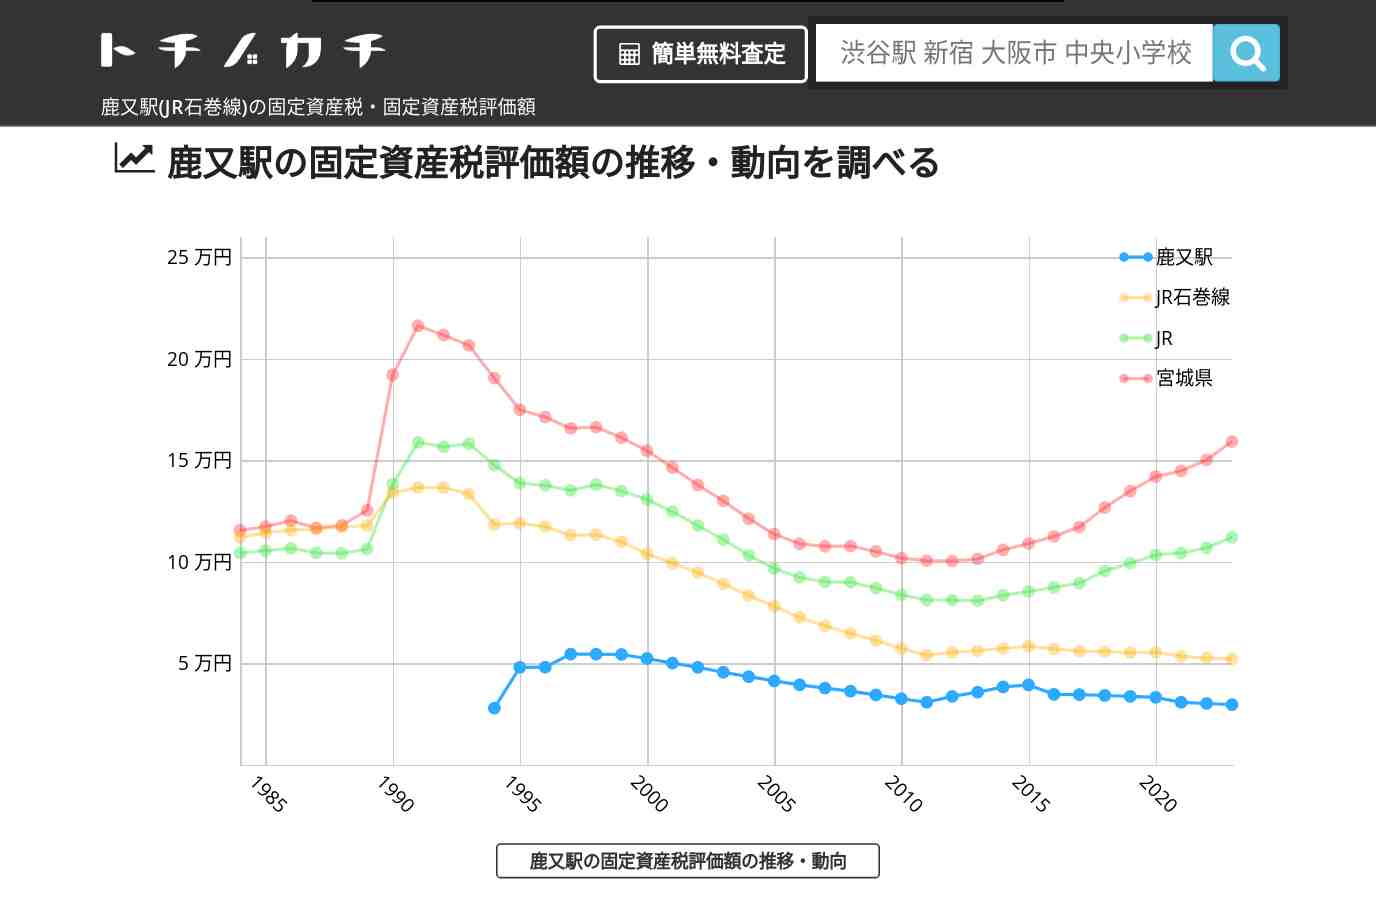 鹿又駅(JR石巻線)の固定資産税・固定資産税評価額 | トチノカチ